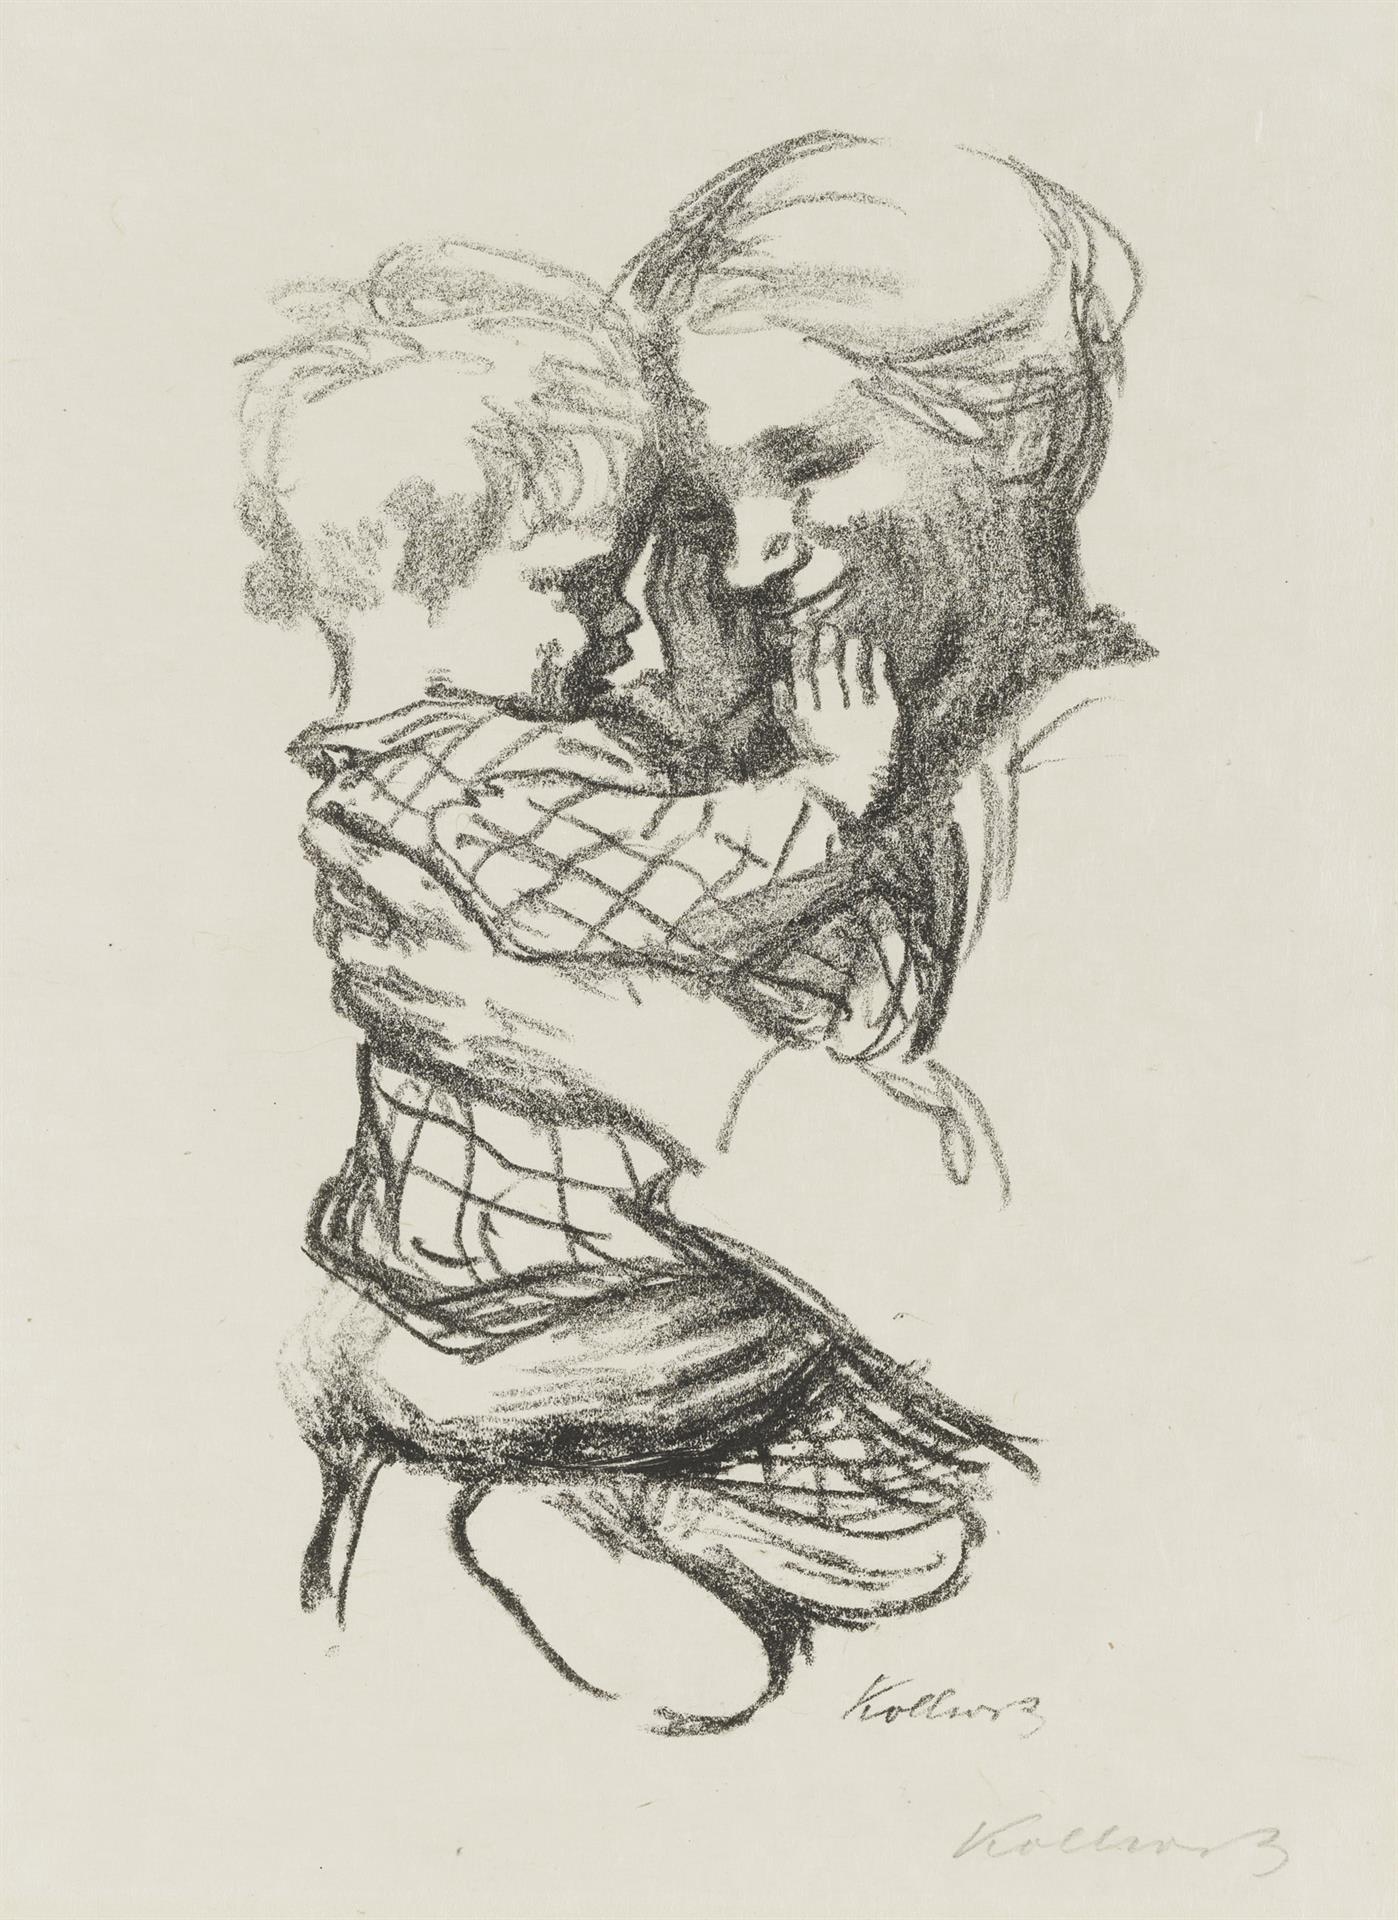 Käthe Kollwitz, Mère avec son enfant dans les bras, version finale, 1916, lithographie au crayon (report), Kn 136 A II, Collection Kollwitz de Cologne © Käthe Kollwitz Museum Köln